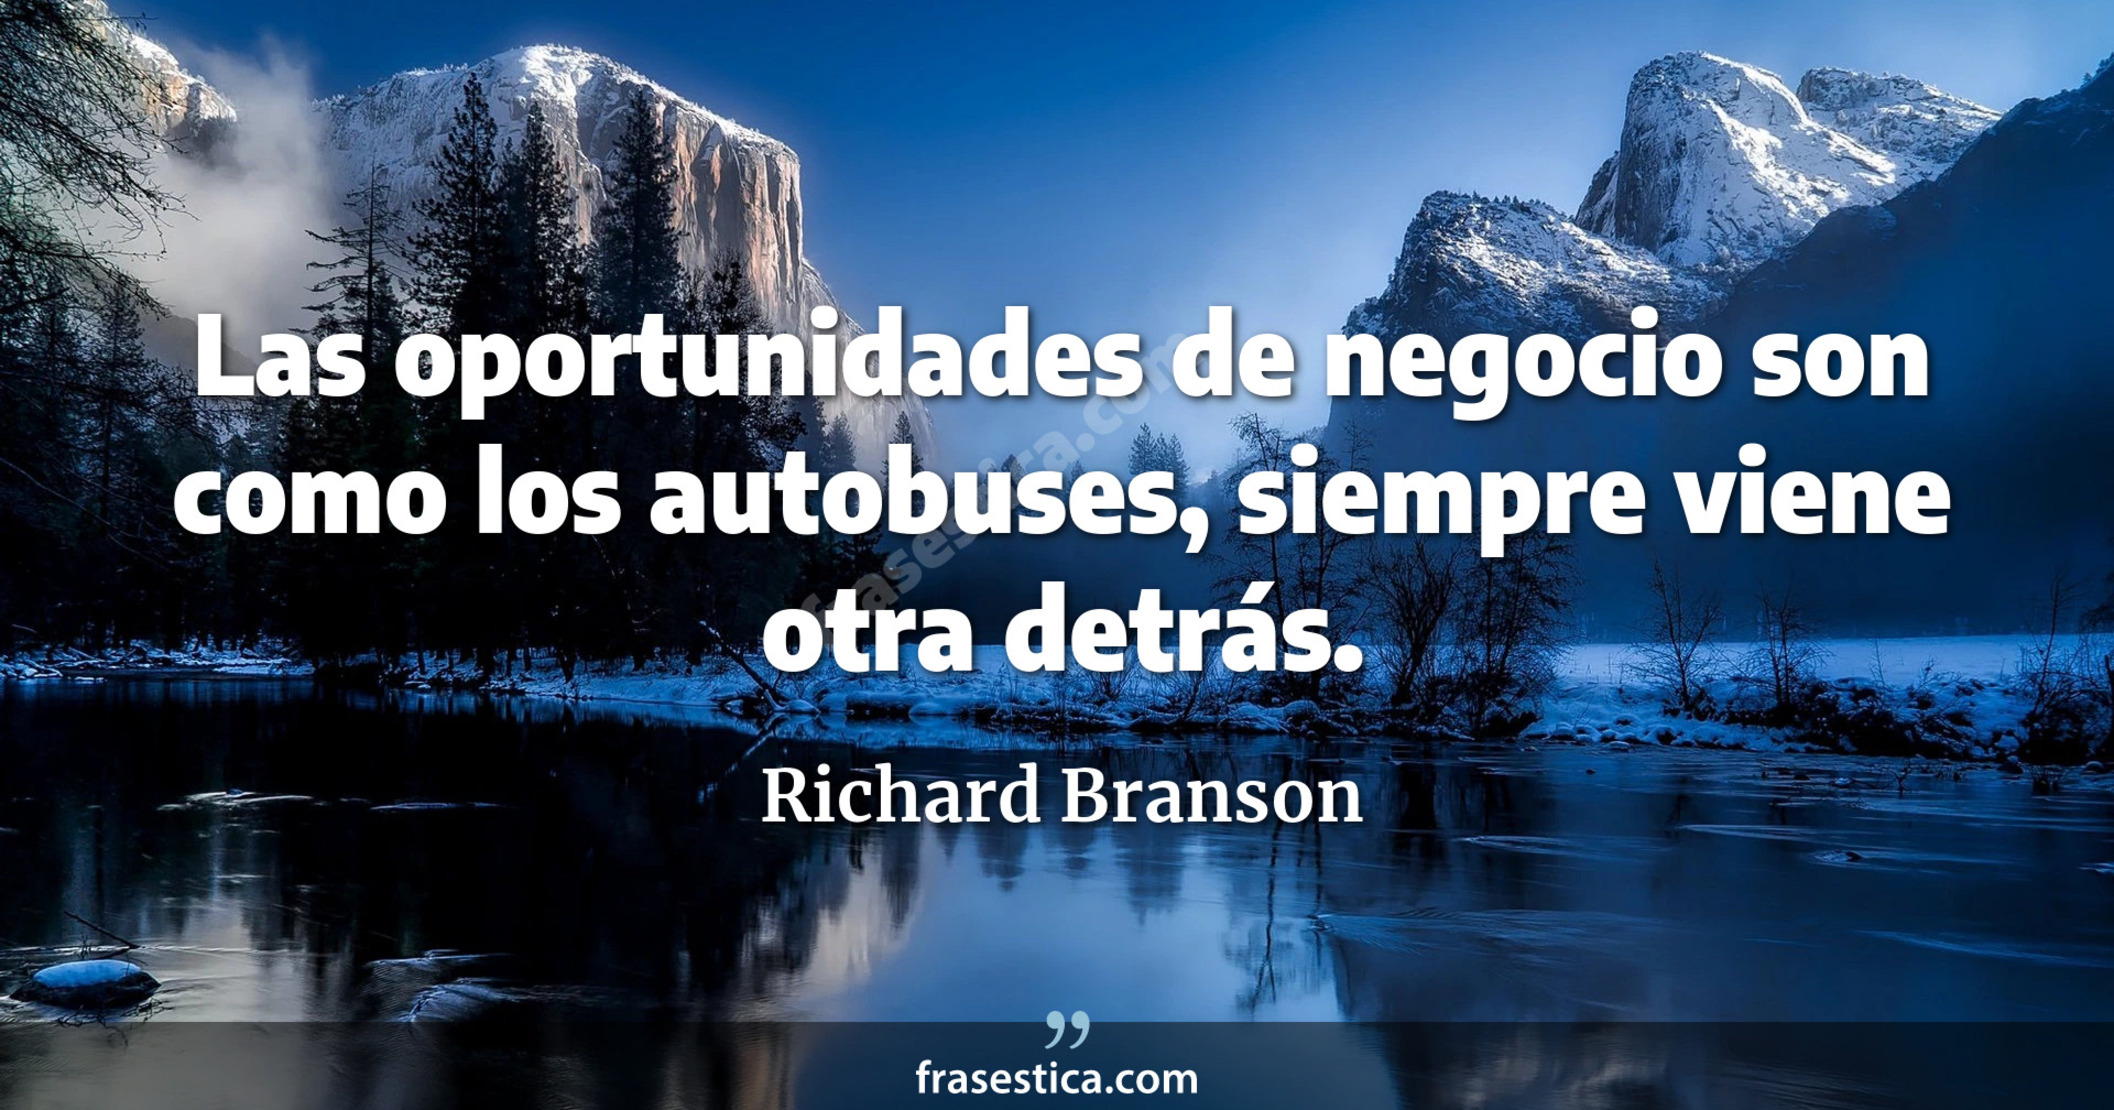 Las oportunidades de negocio son como los autobuses, siempre viene otra detrás. - Richard Branson